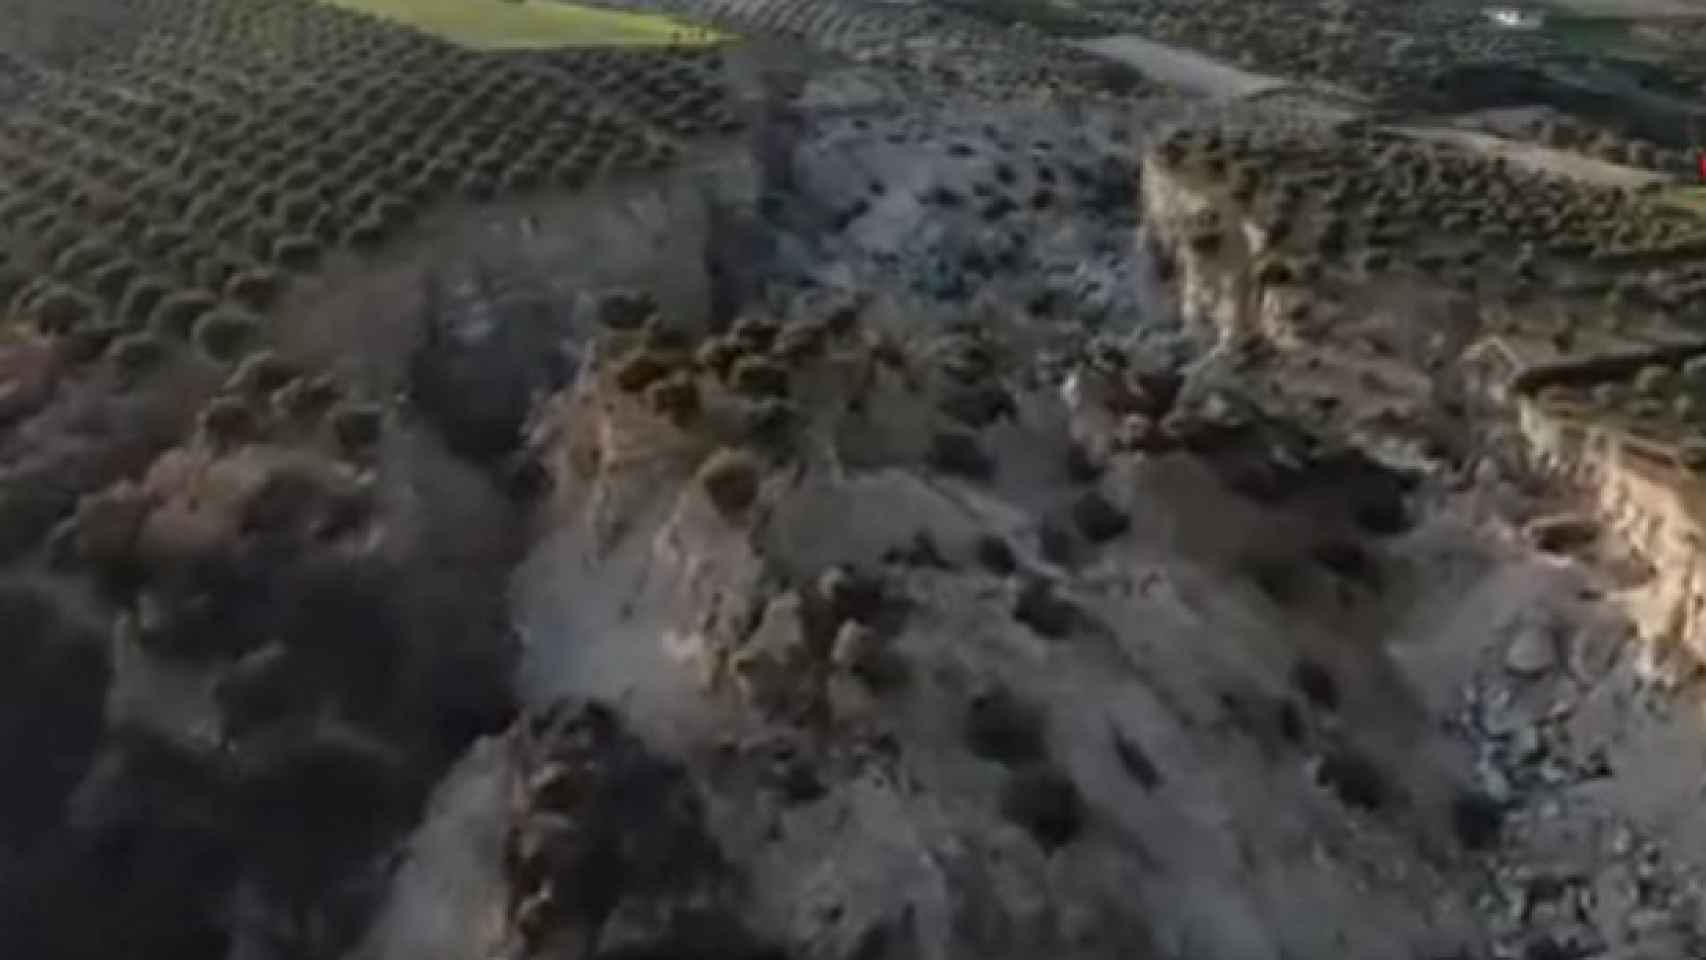 Fotograma del vídeo en el que se muestra una falla de más de 30 metros de profundidad en Turquía.